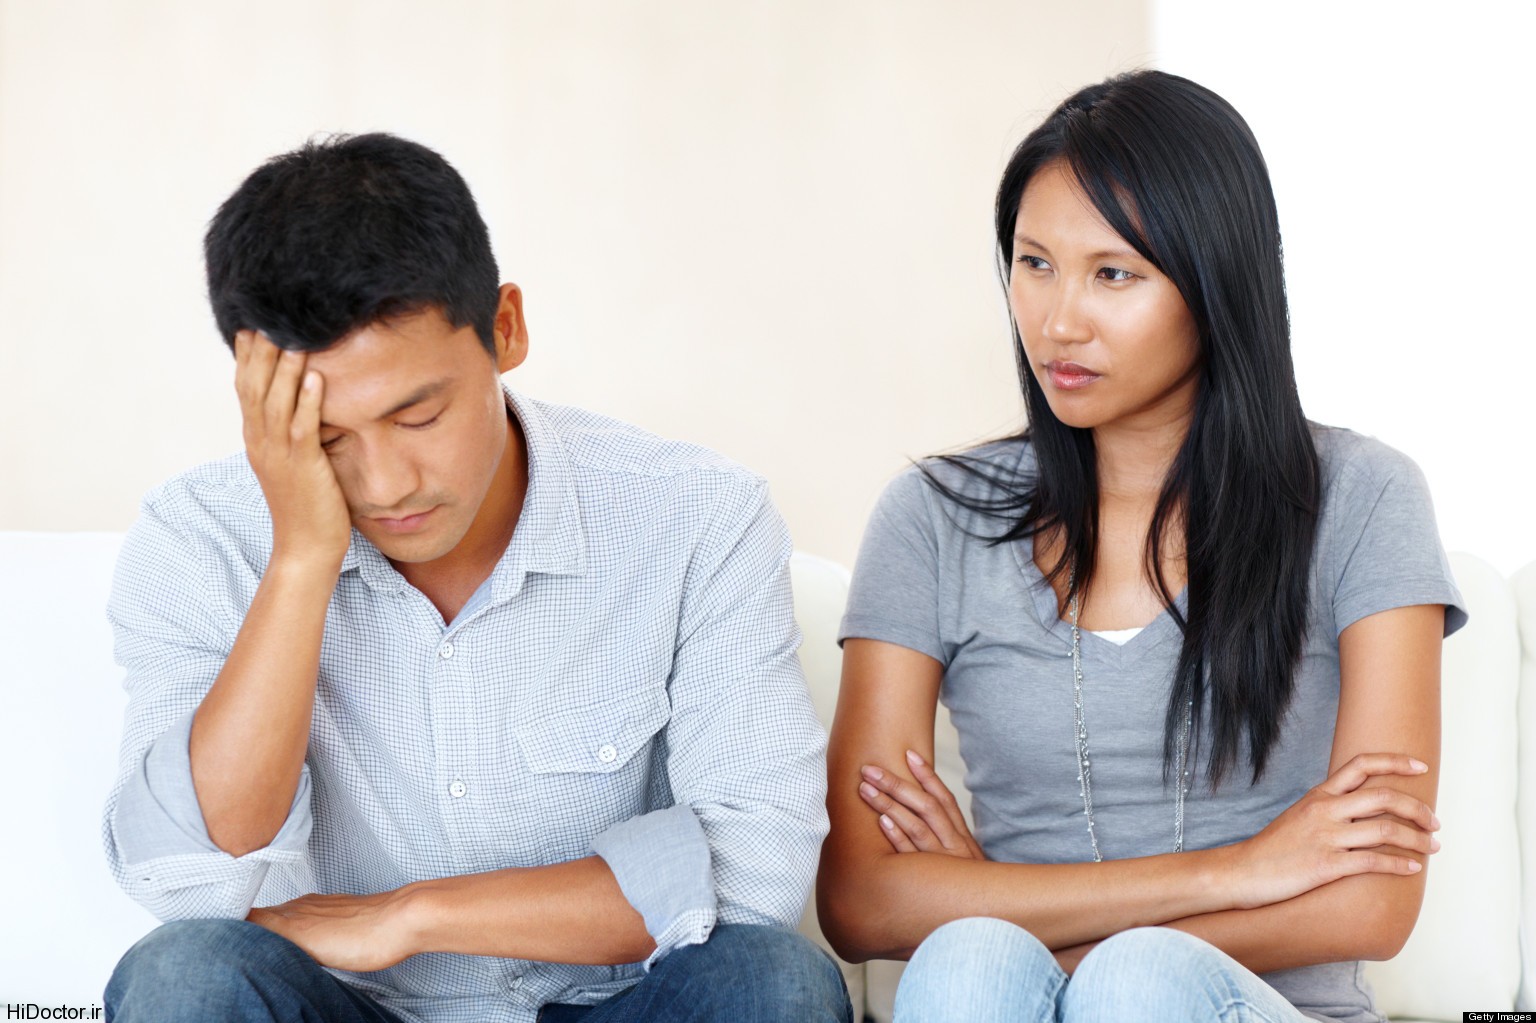 چرا زنان بیشتر از مردان خواستار طلاق و جدایی هستند؟